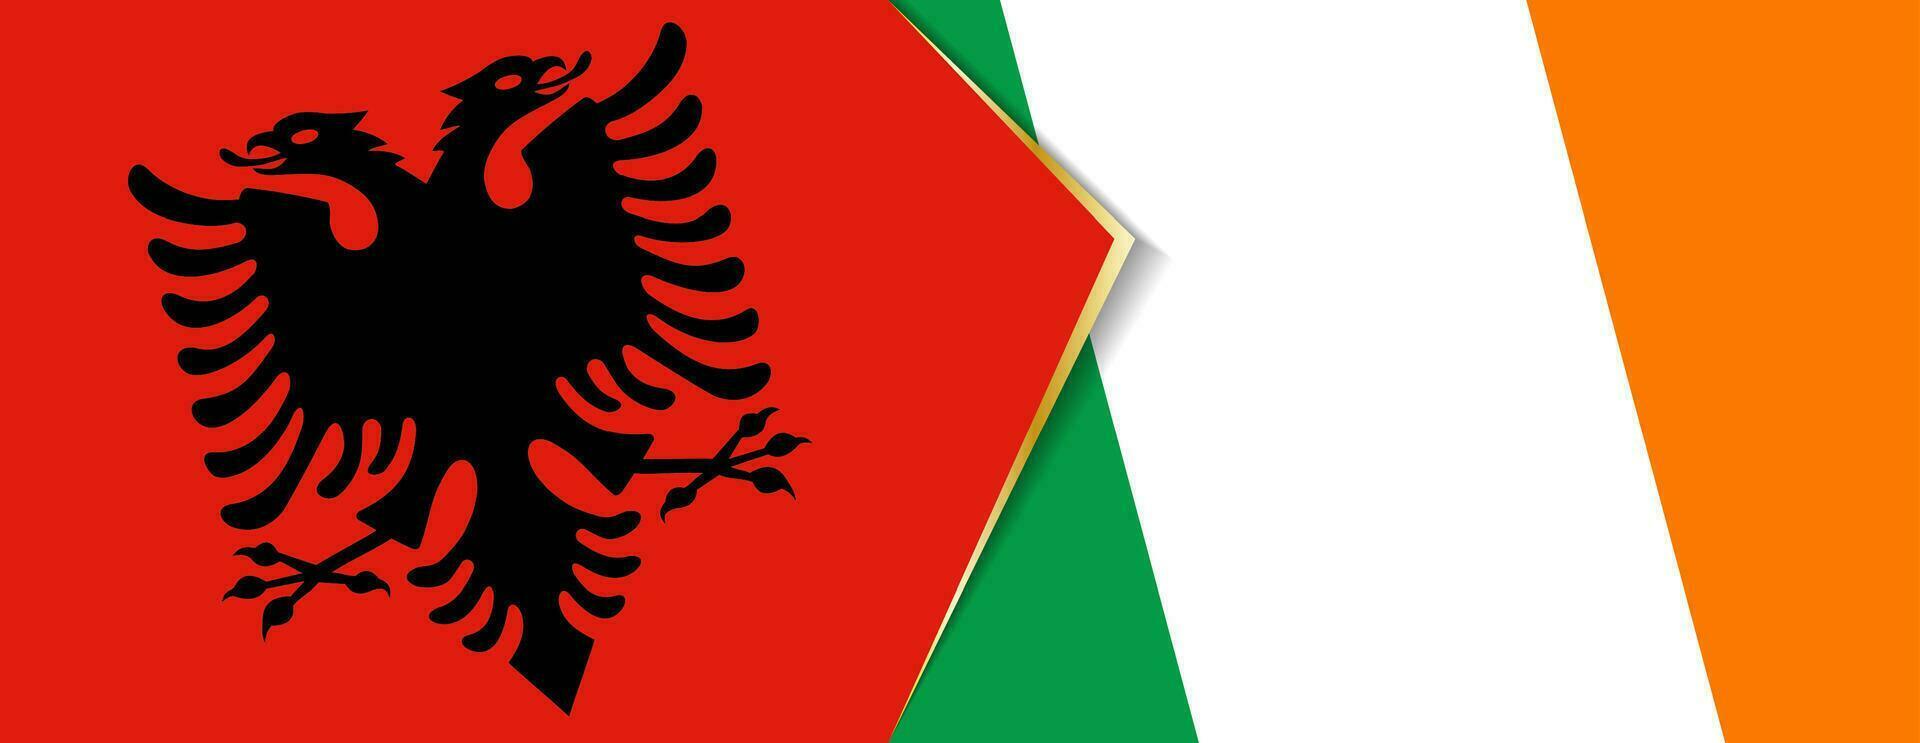 Albania y Irlanda banderas, dos vector banderas